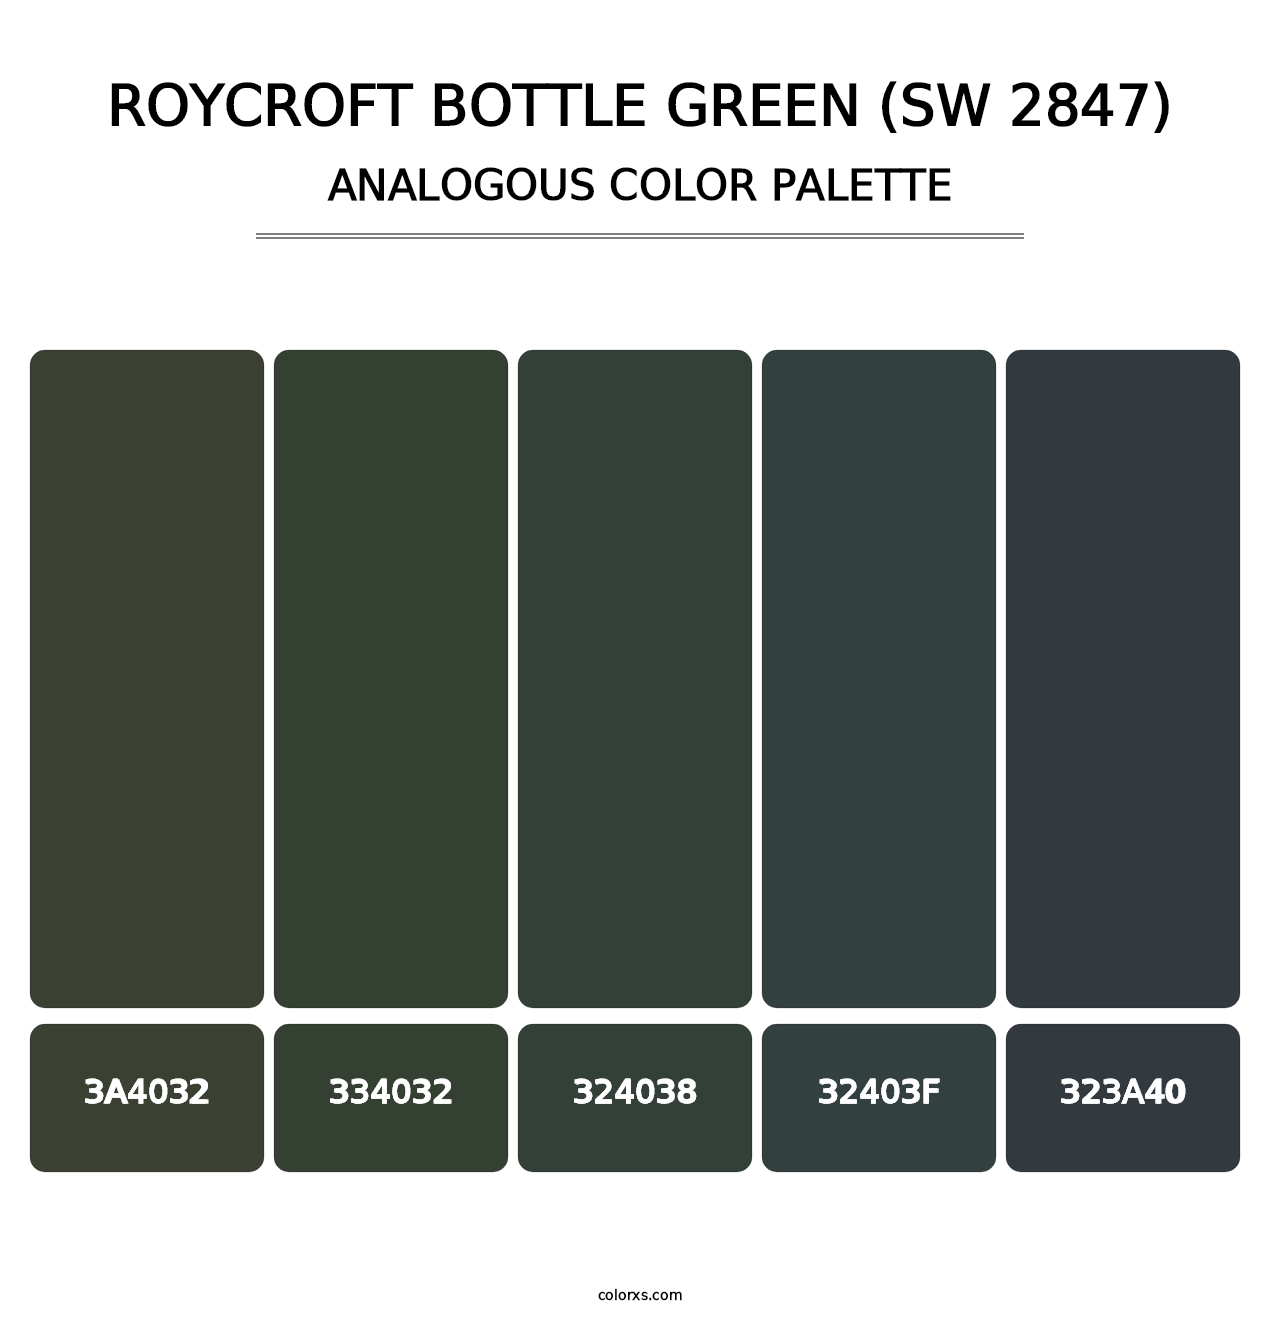 Roycroft Bottle Green (SW 2847) - Analogous Color Palette